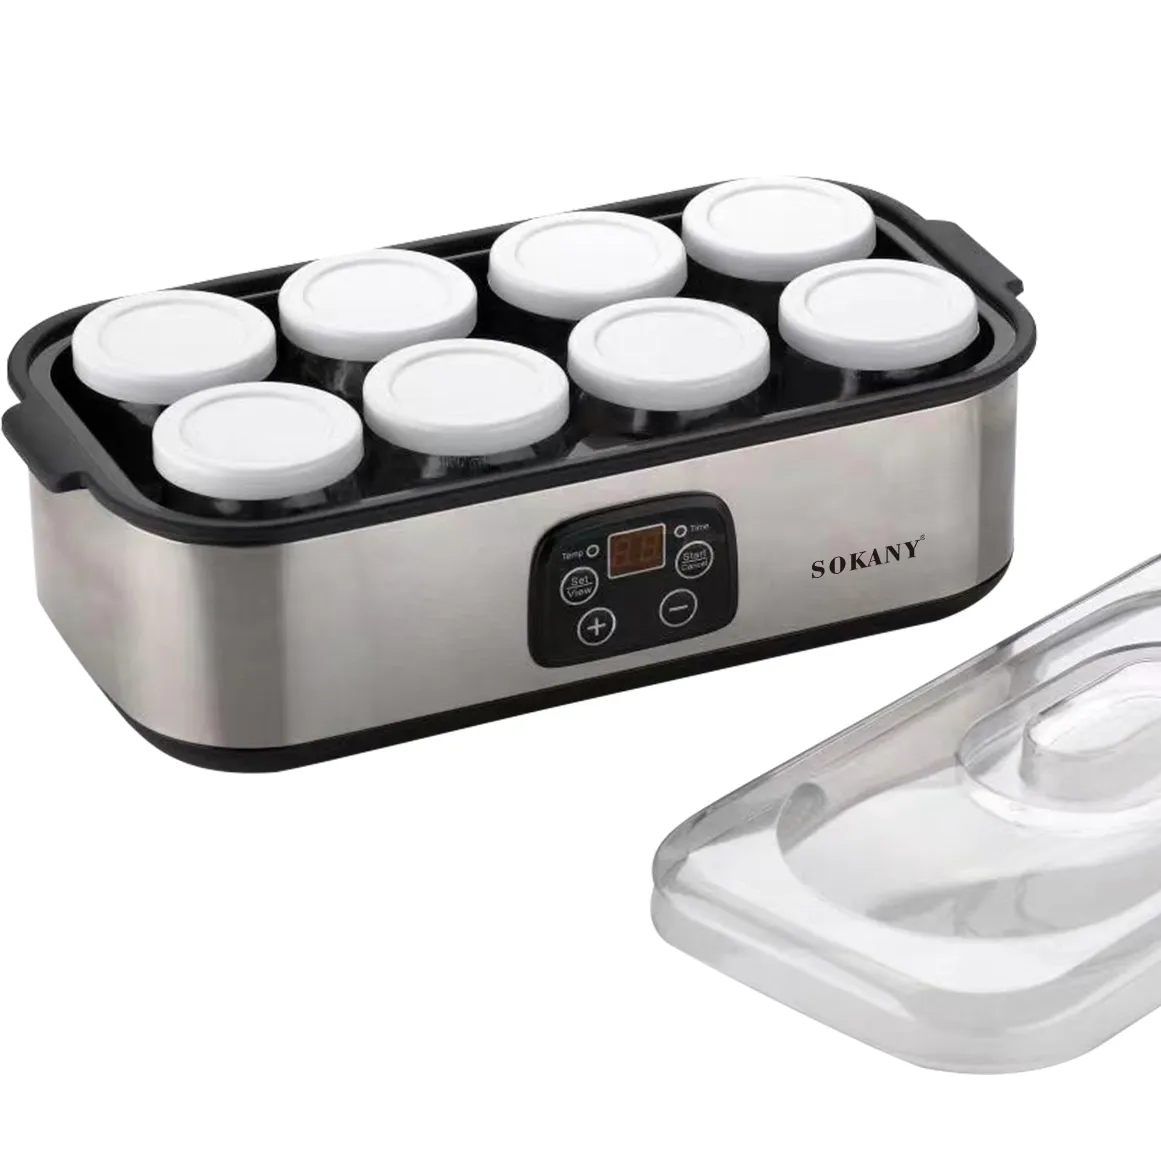 Premium Brand sokany 2303 automatico conveniente separato 8 tazze Yogurt Maker Machine